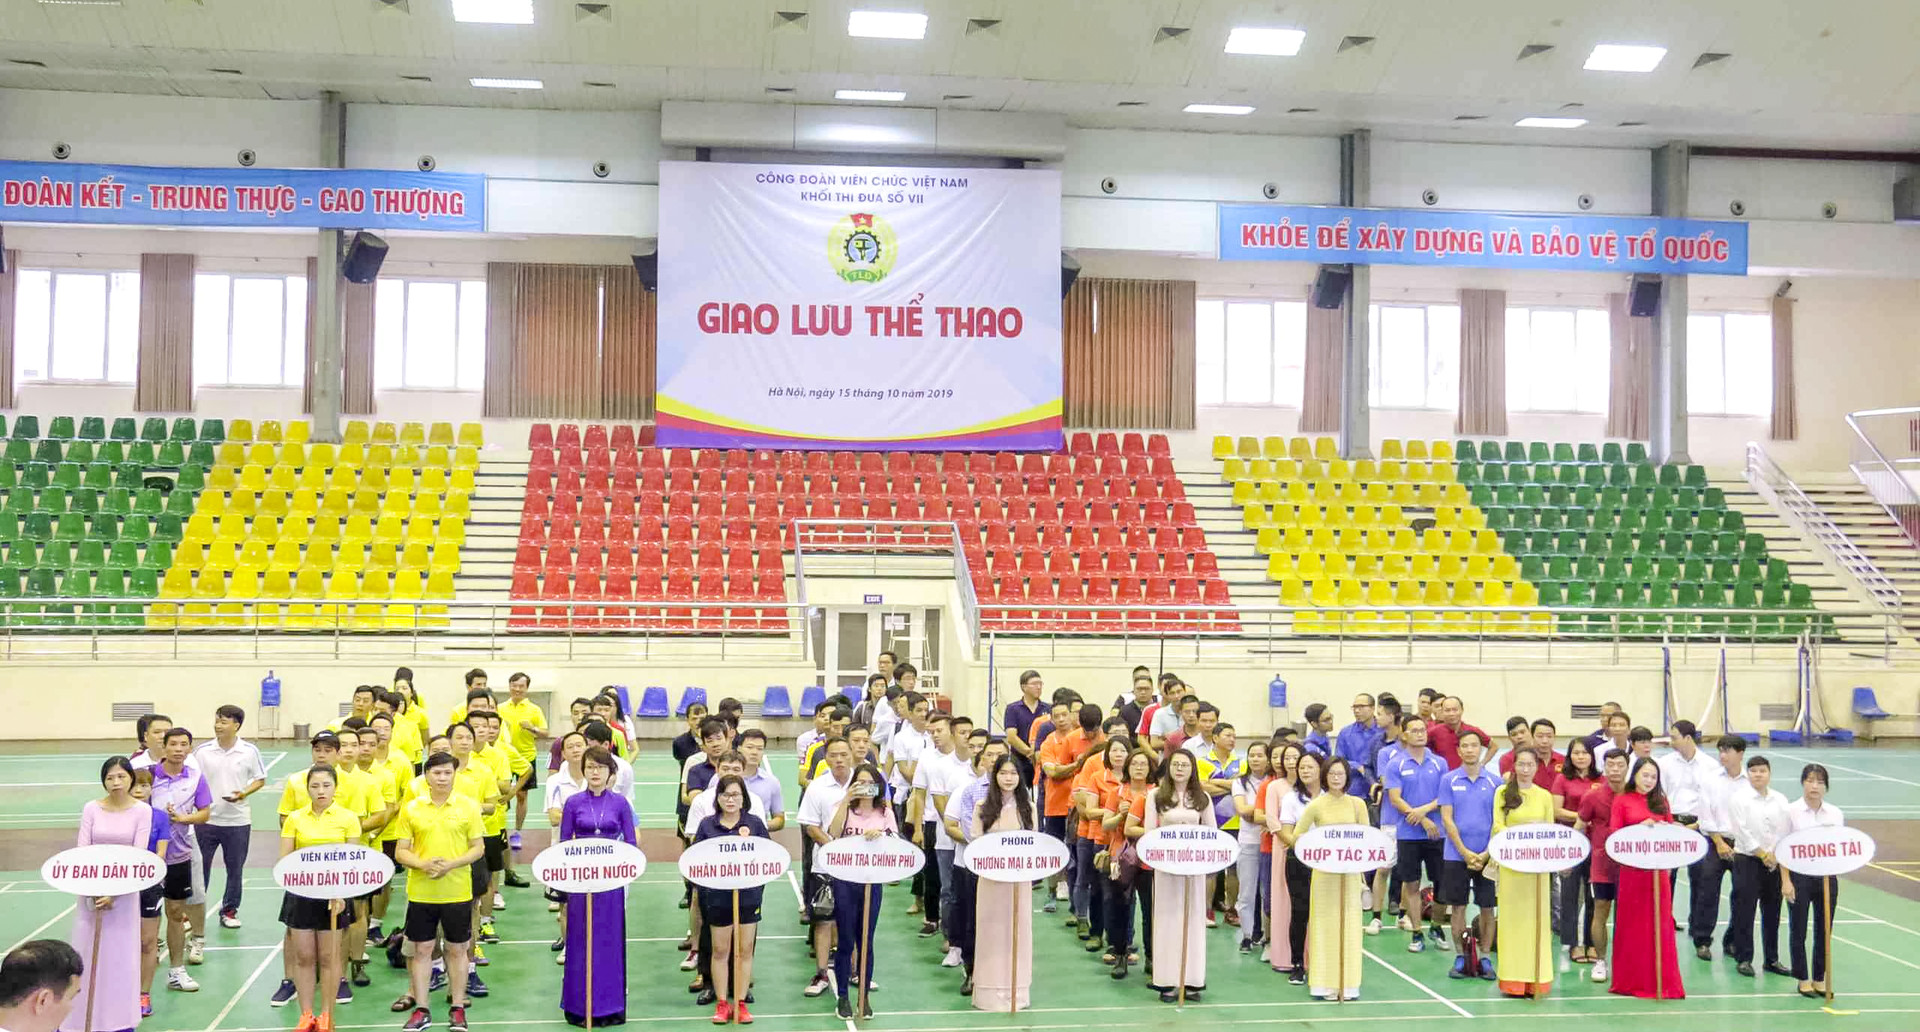 Giao lưu thể thao Khối thi đua số VII Công đoàn viên chức Việt Nam